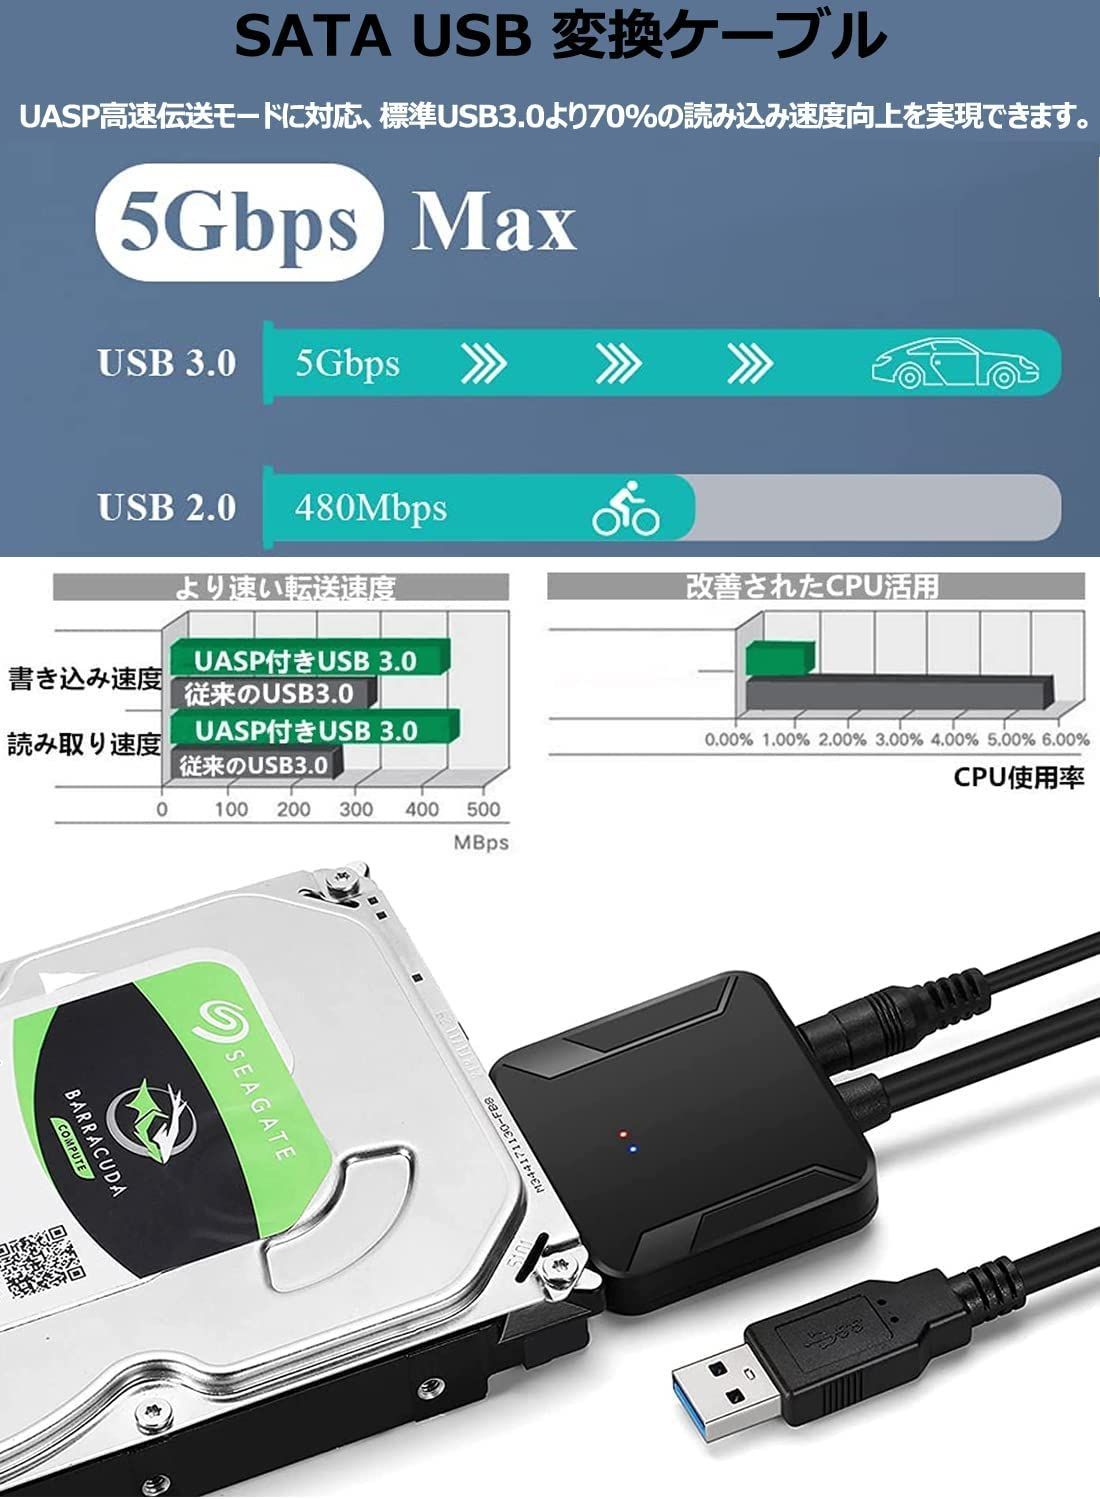 SATA USB 2.0 変換 ケーブル